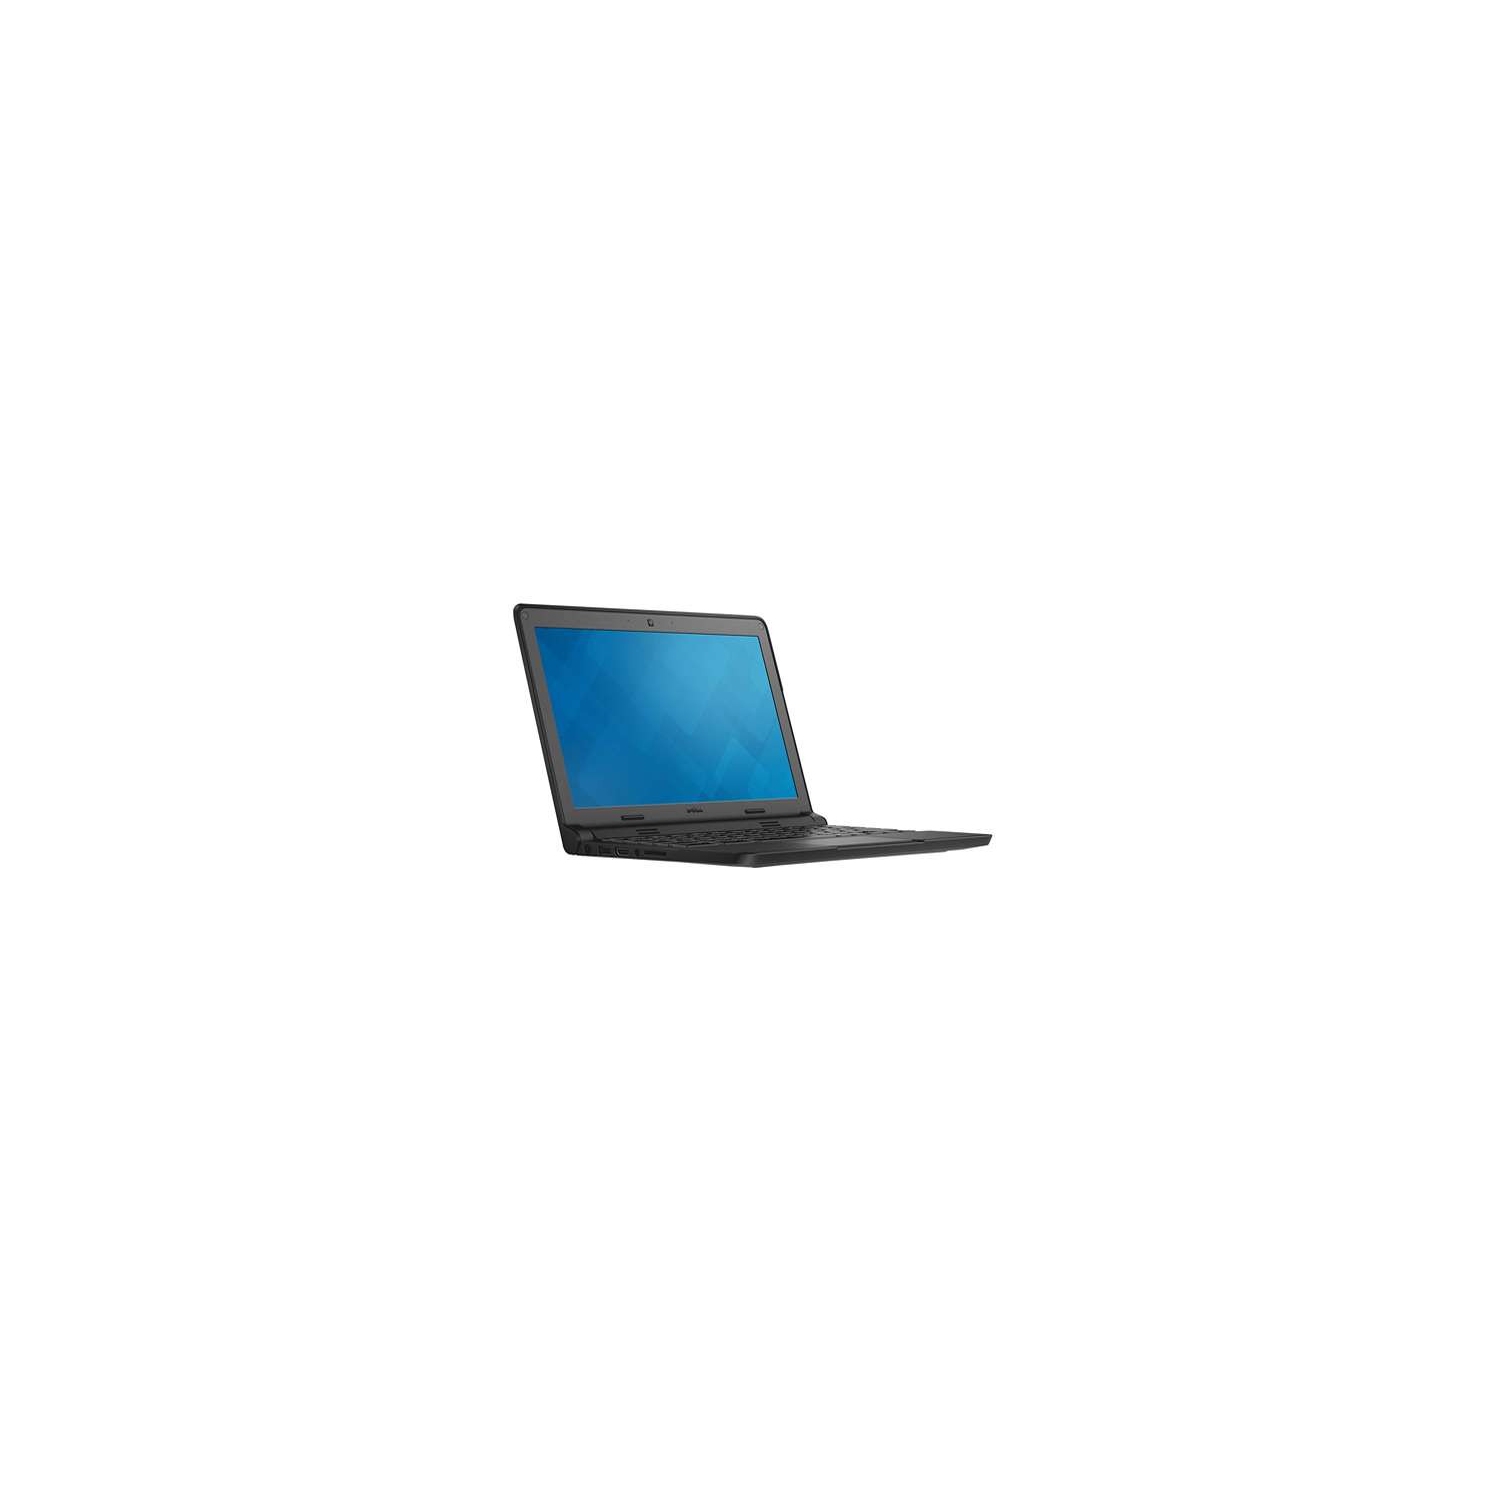 Refurbished (Fair) - Dell Chromebook 11 3120 (11.6", Intel Celeron N2840, 4GB RAM, 16GB SSD, Latest Chromebook OS)